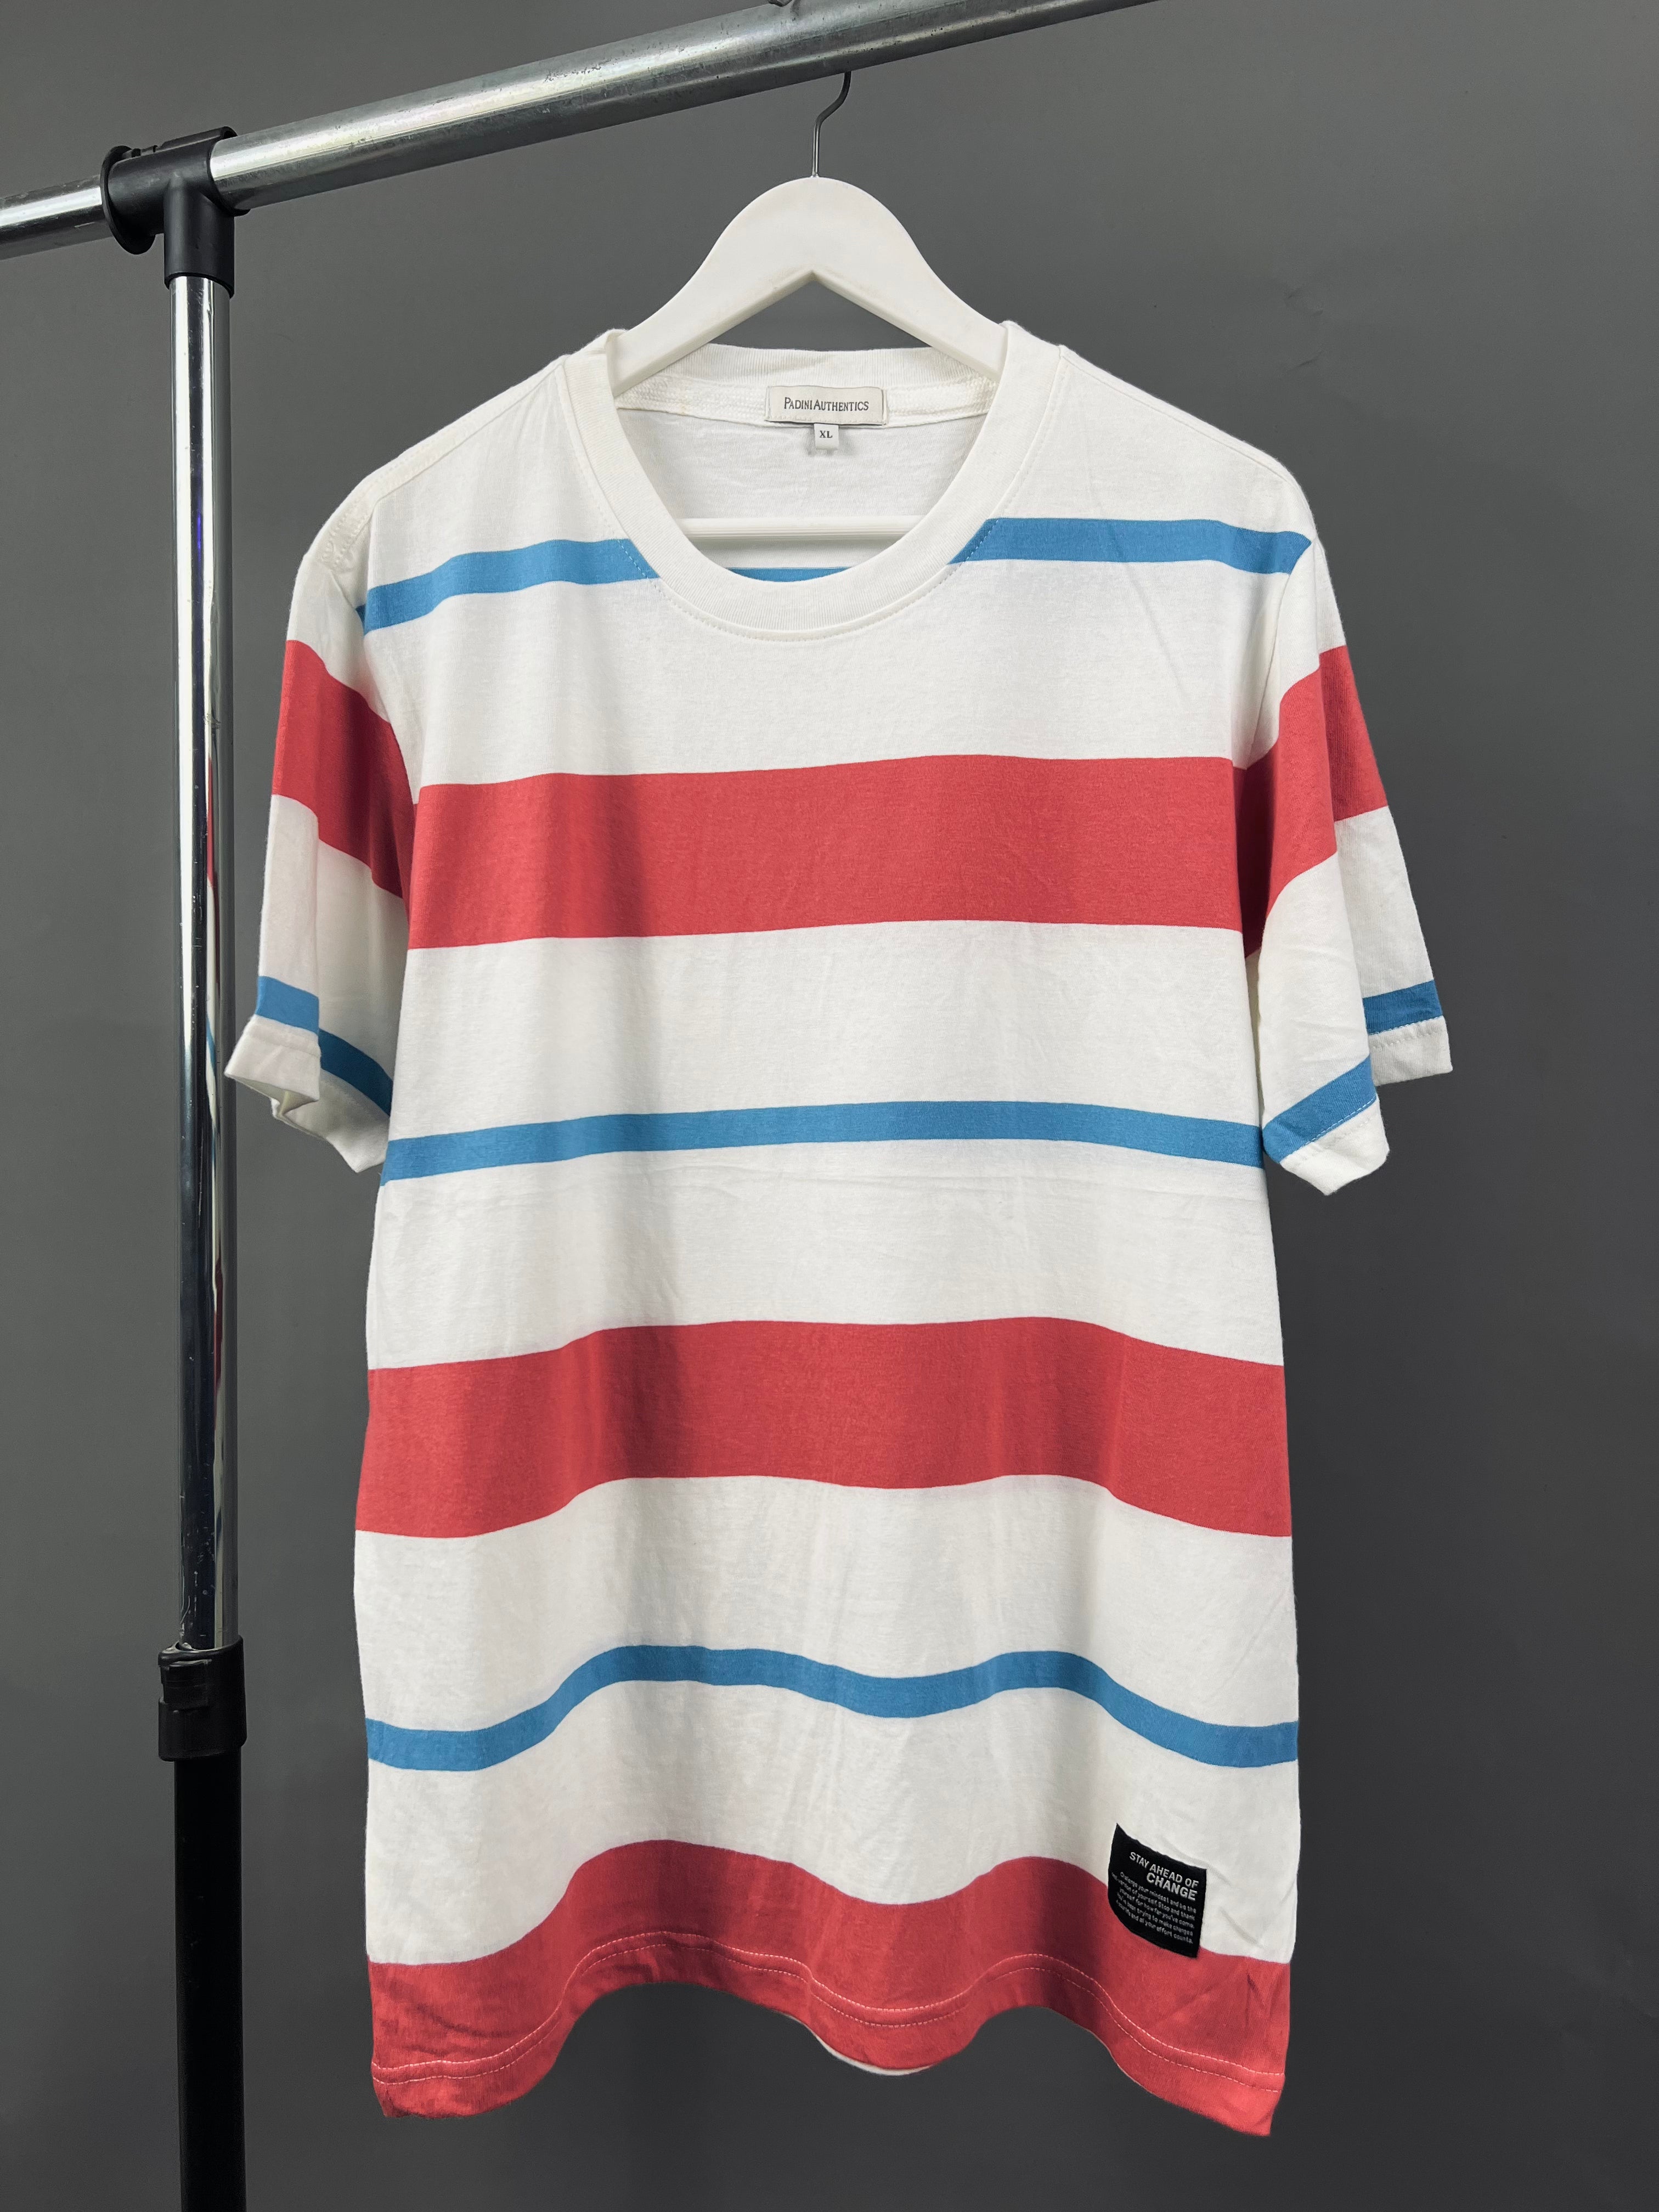 Padini bar stripe t-shirt – Garmisland